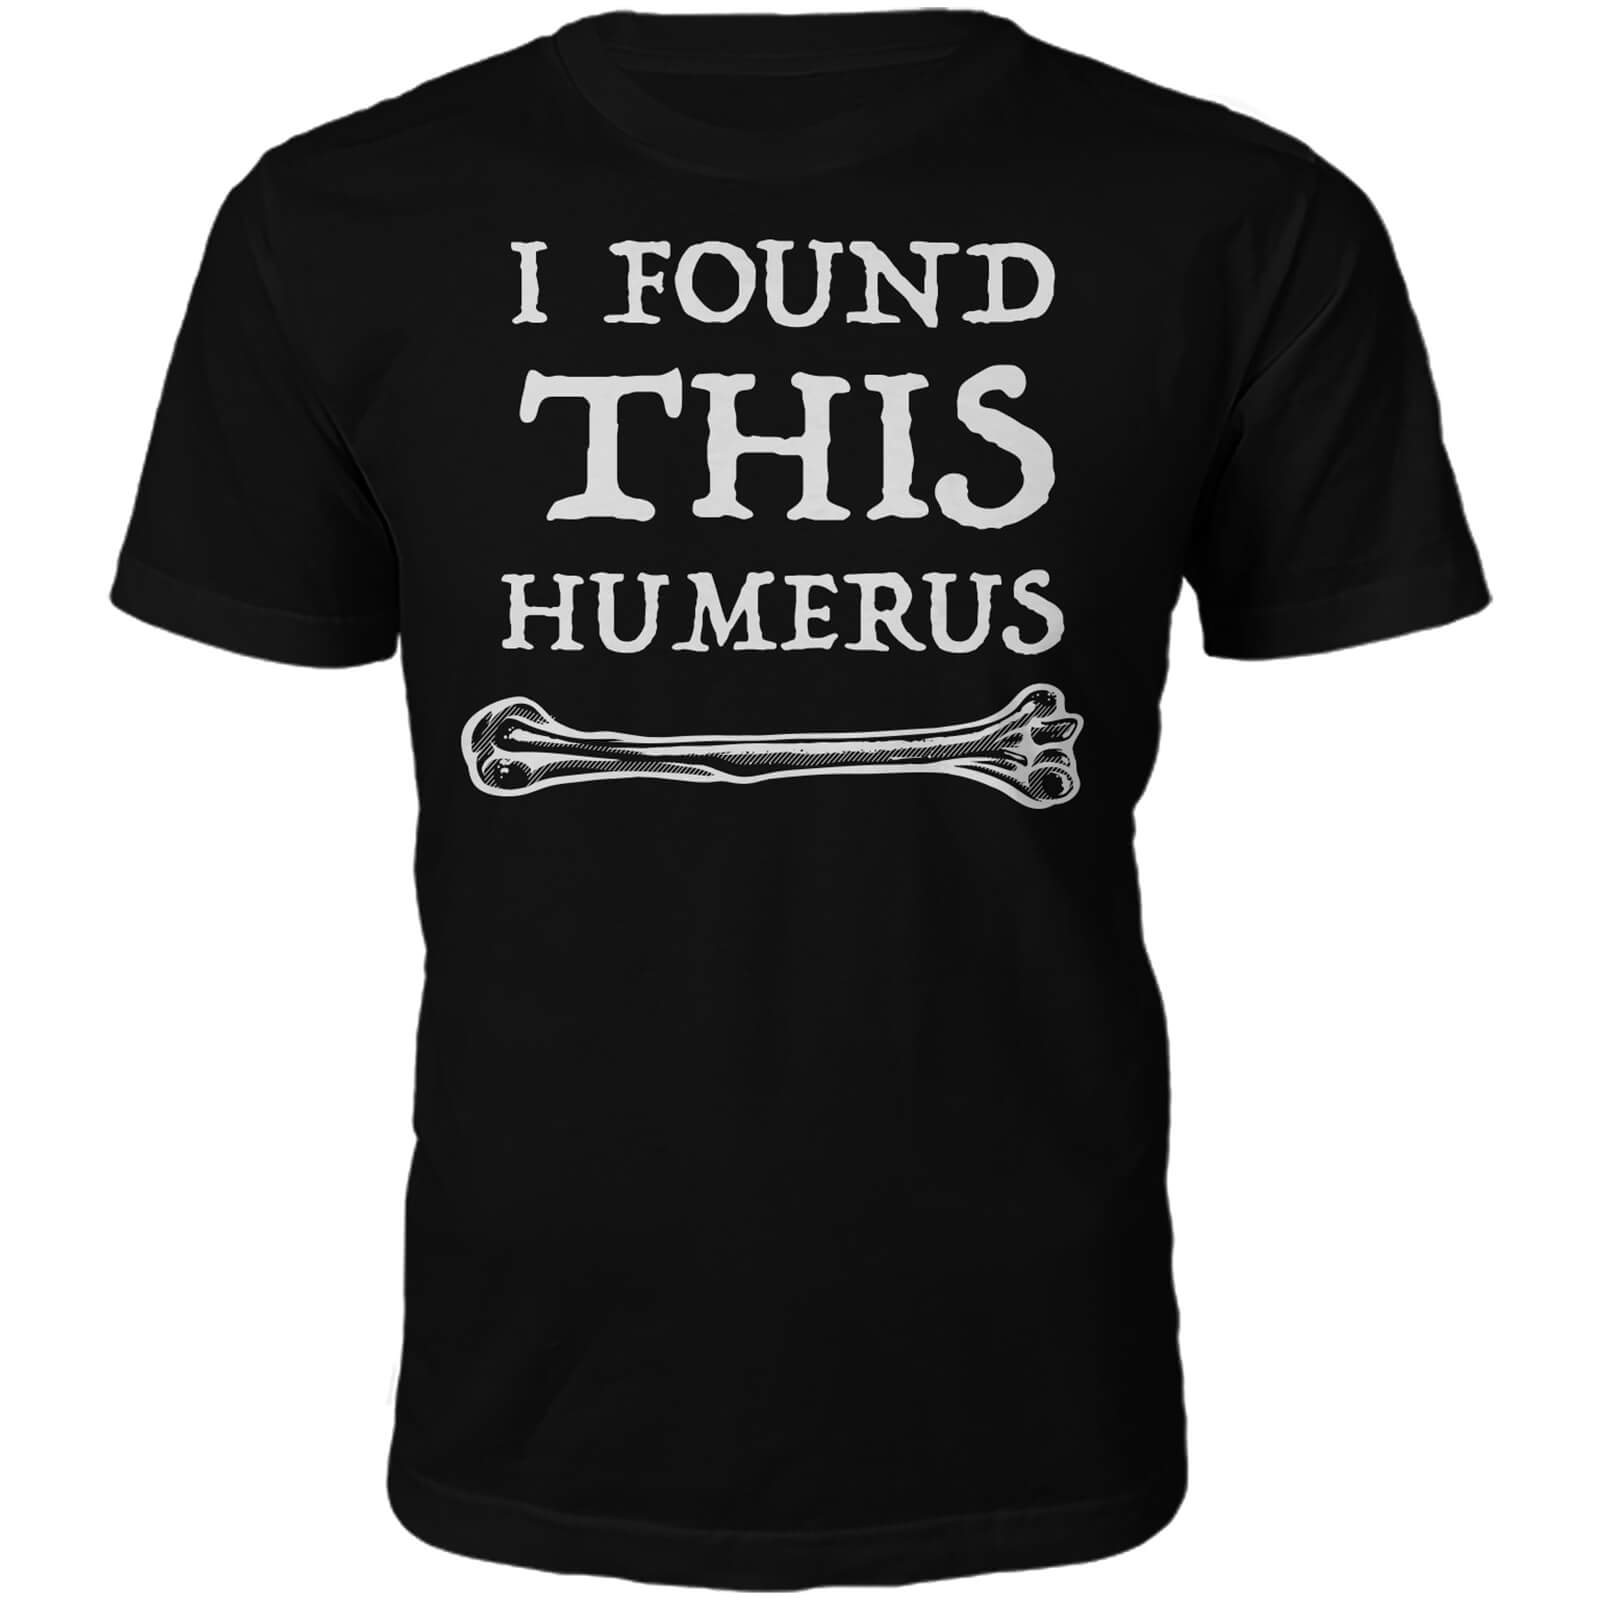 Men's Humerus Slogan T-Shirt - Black - S - Black